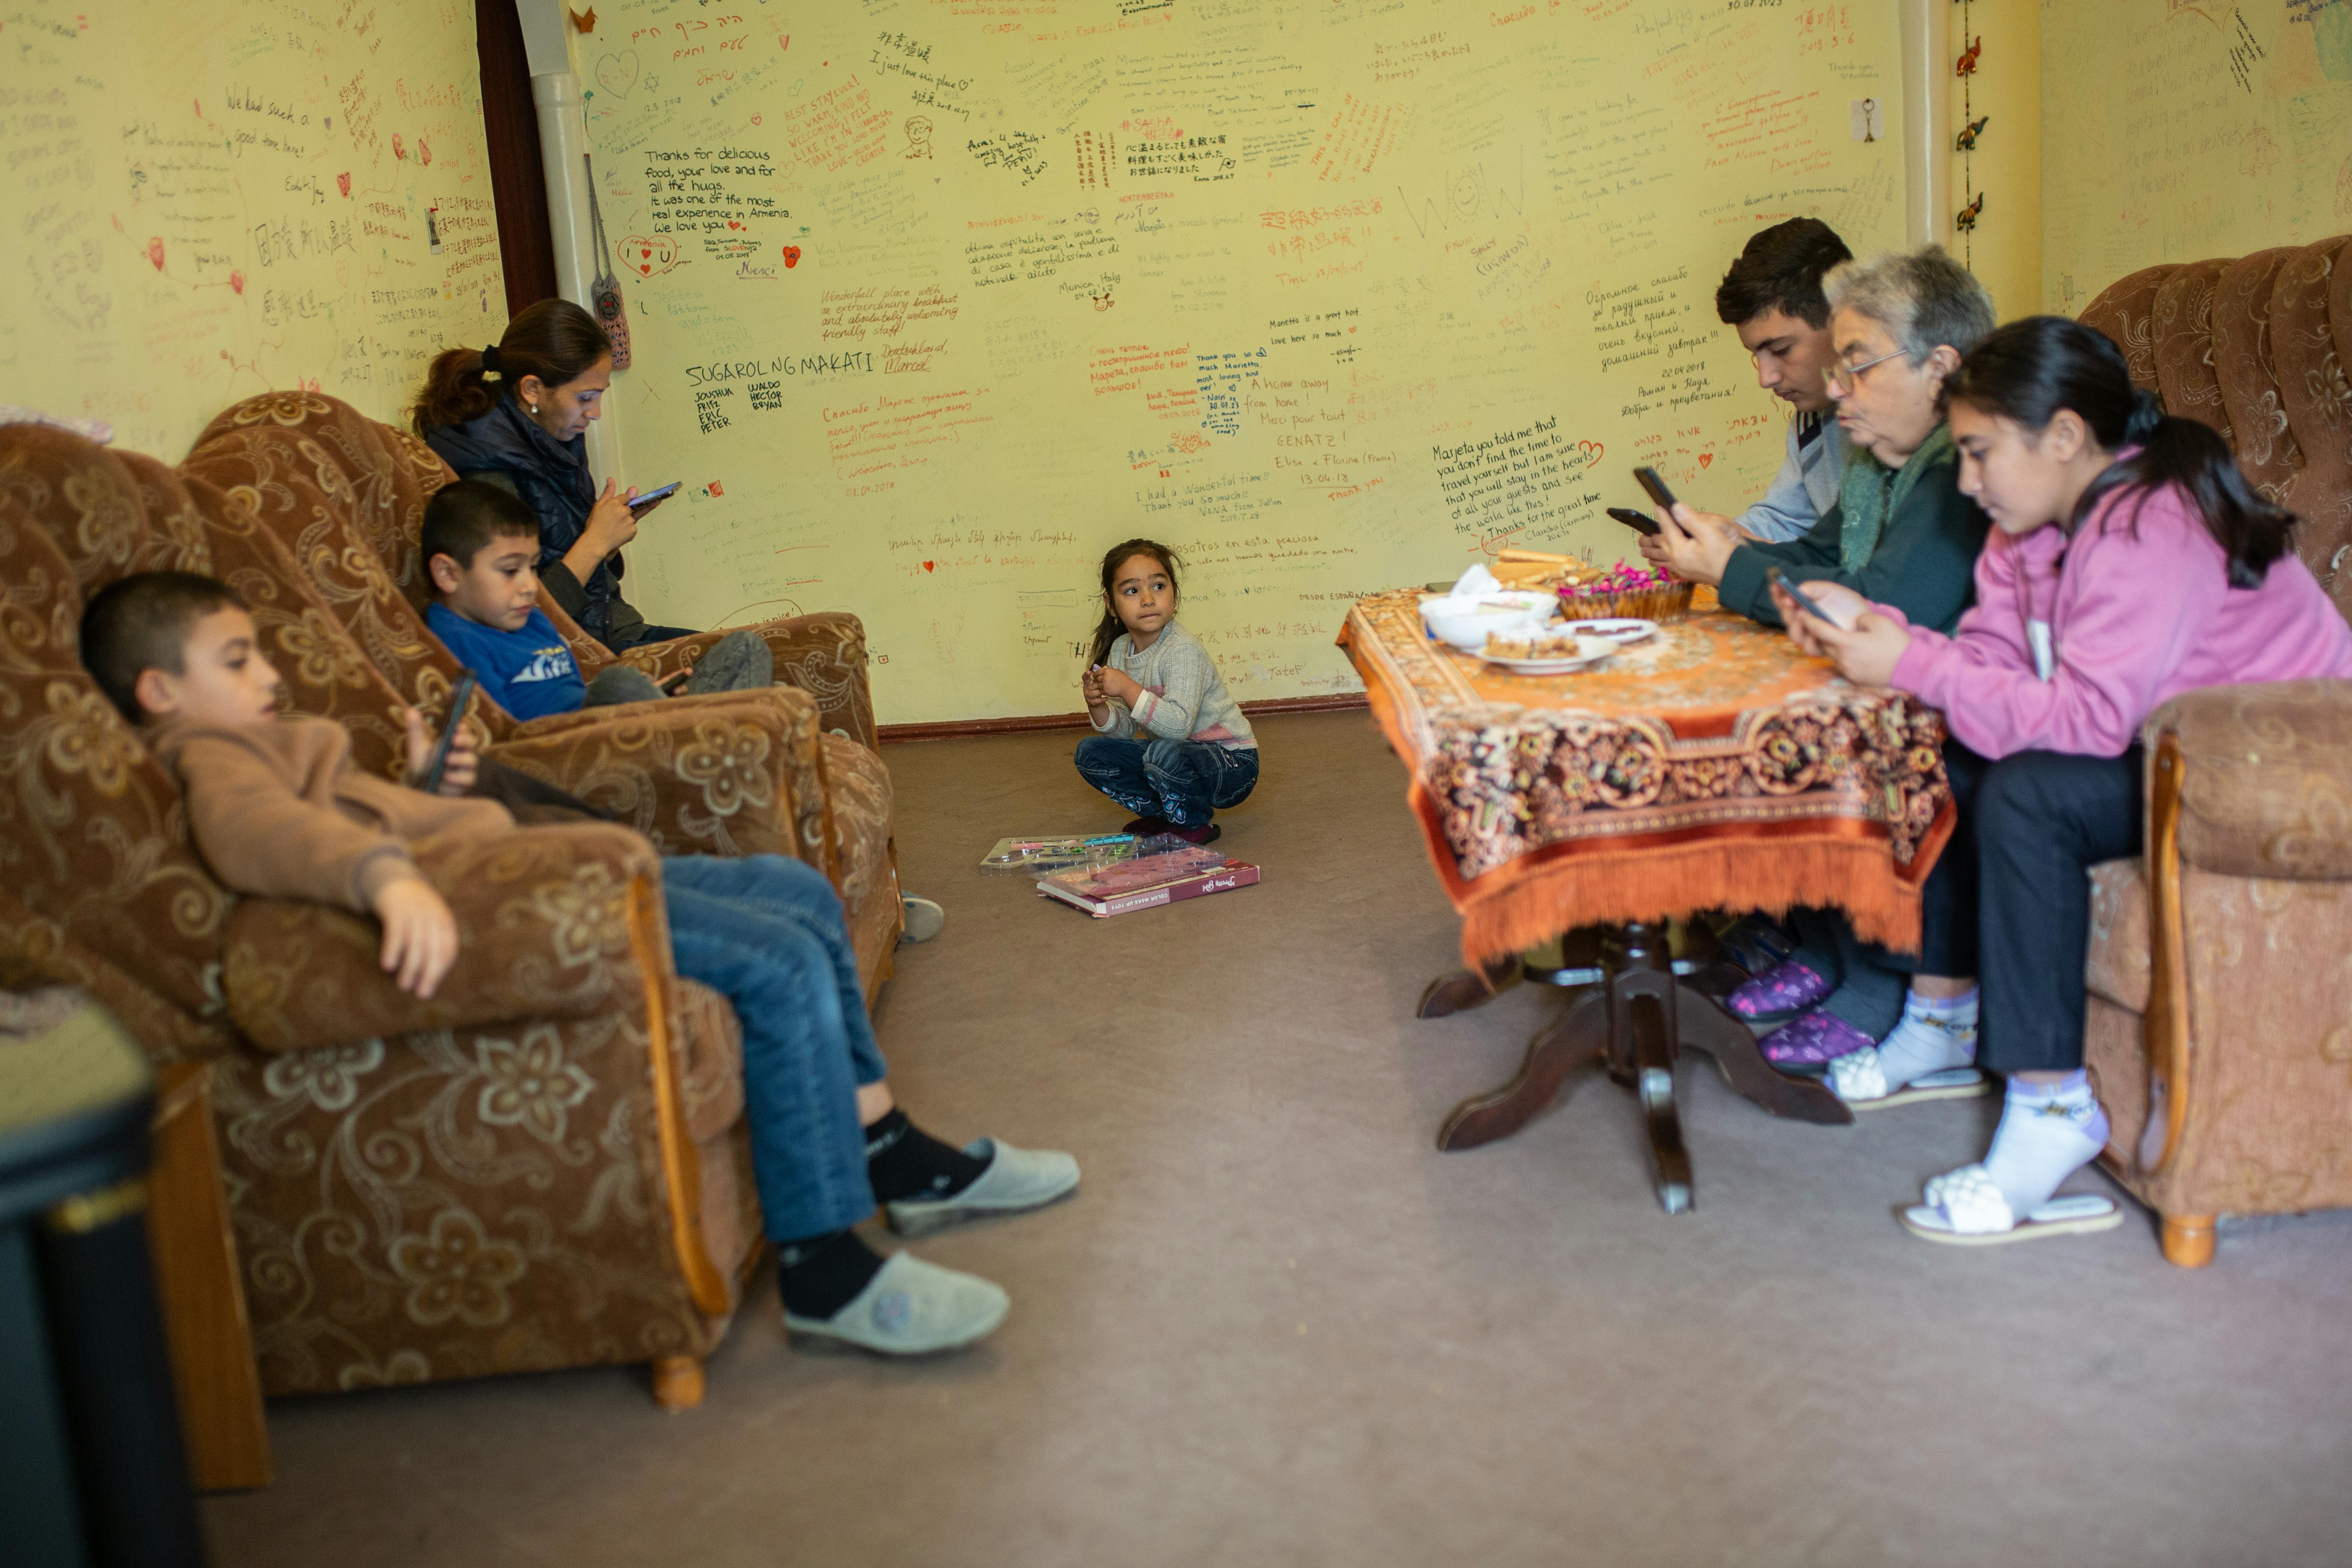 Seda Harutyunyan, nonna di quattro nipoti - Vika (11 anni), Armen (8 anni), Harut (13 anni) e Vahe (14 anni) - ha intrapreso un viaggio straziante, cercando rifugio in Armenia un mese fa